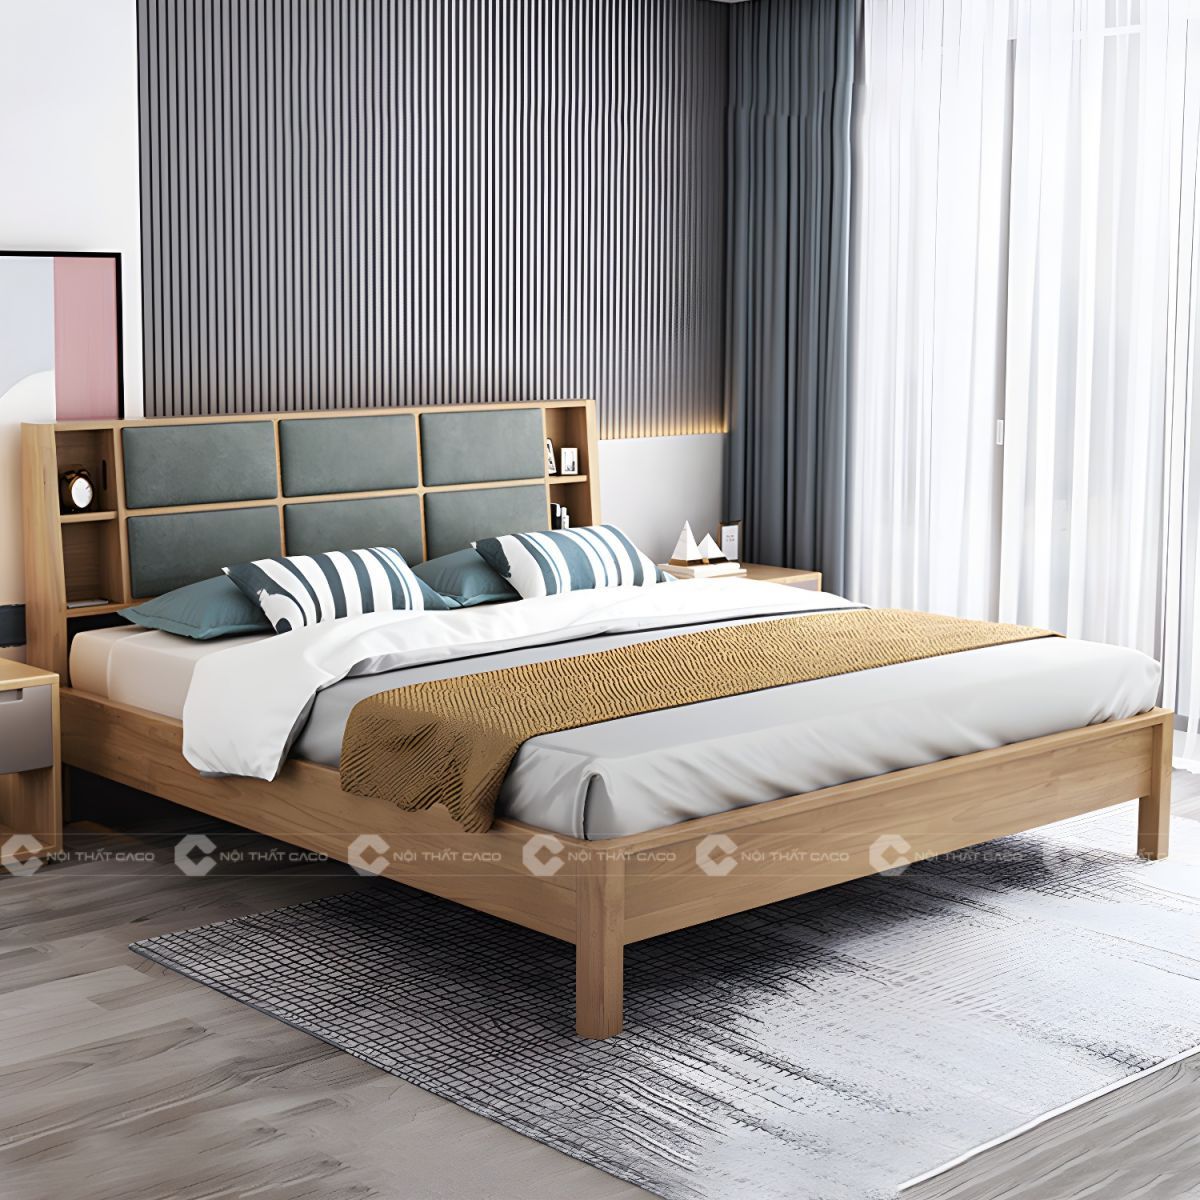 Giường ngủ gỗ tự nhiên với thiết kế đầu giường tinh tế